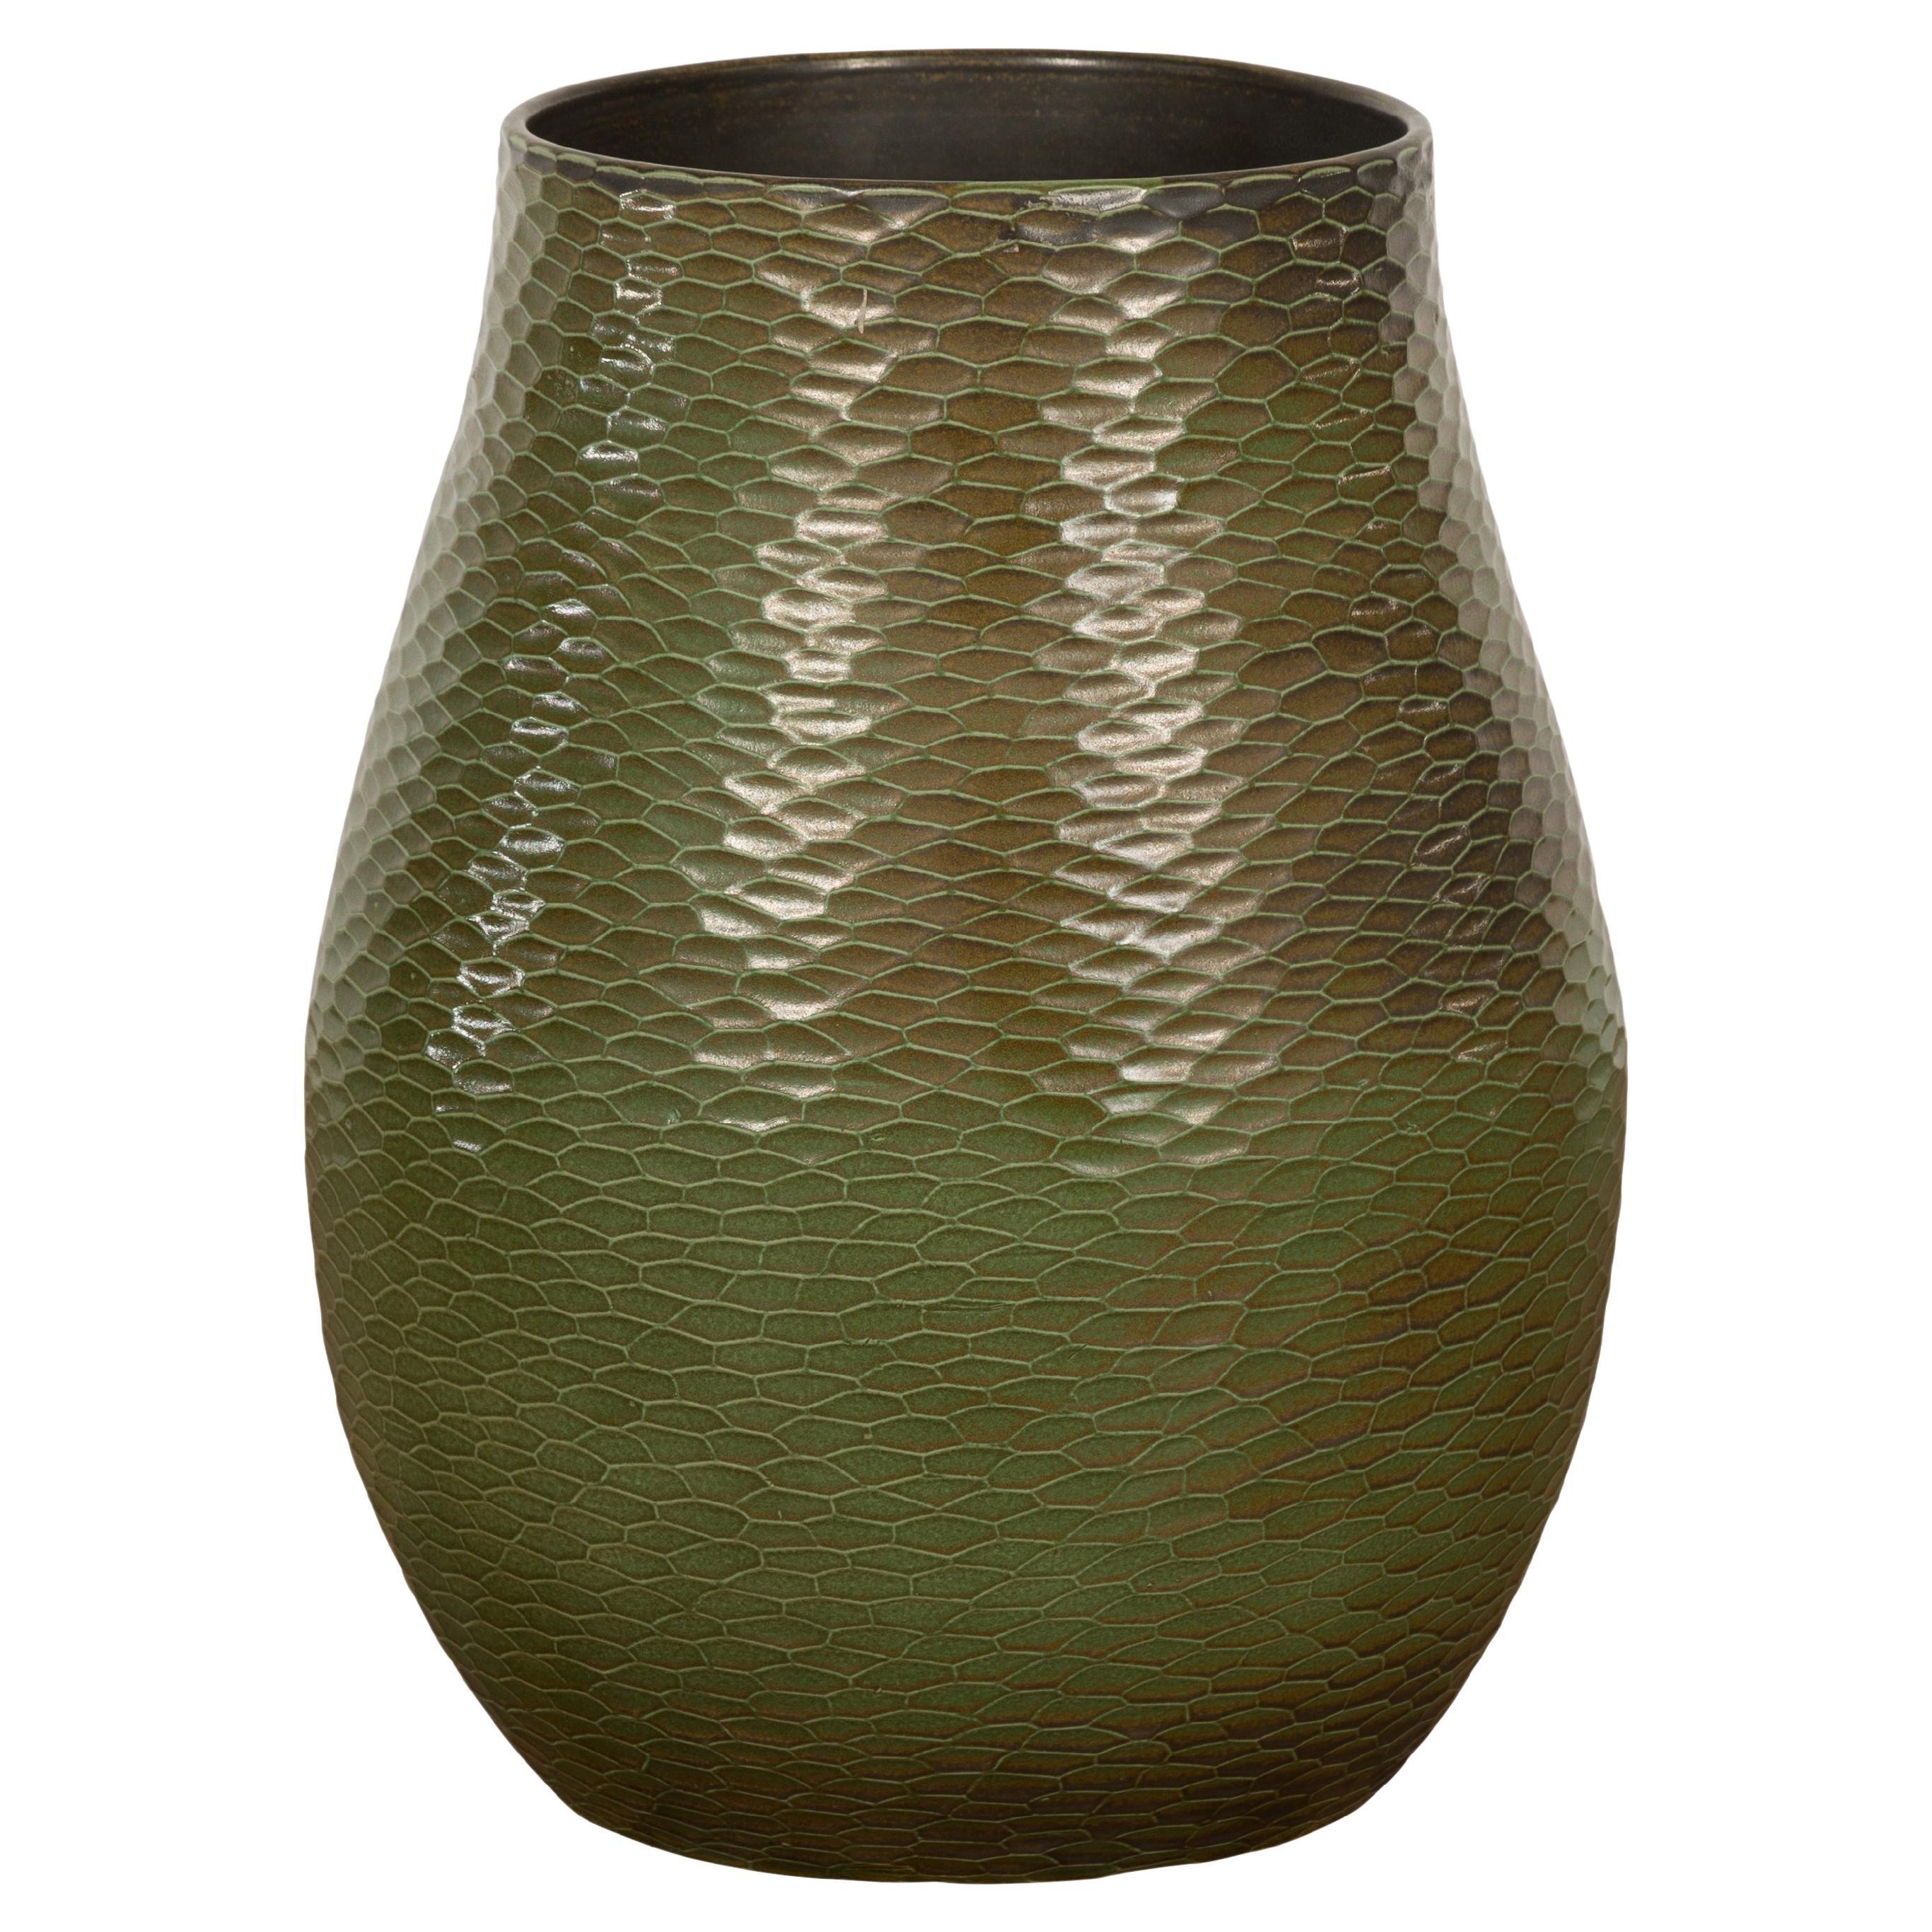 Handgefertigte grüne Vase der Prem-Kollektion mit strukturierten Wabenmotiven